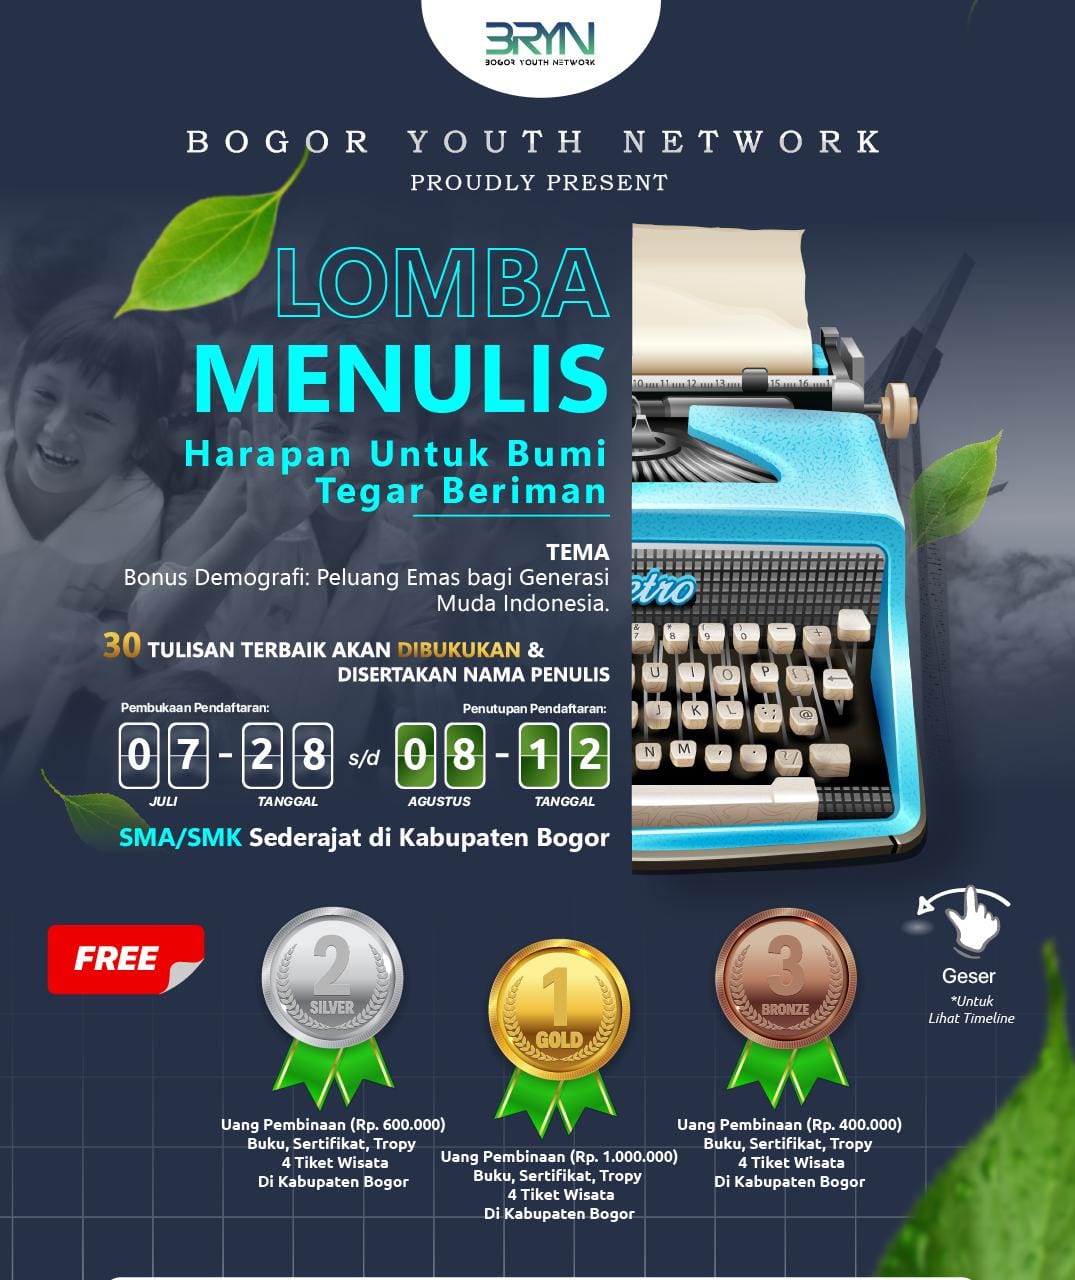 Tingkatkan Literasi di Kabupaten Bogor, Bogor Youth Network adakan Lomba Nulis Tingkat SMA/Sederajat